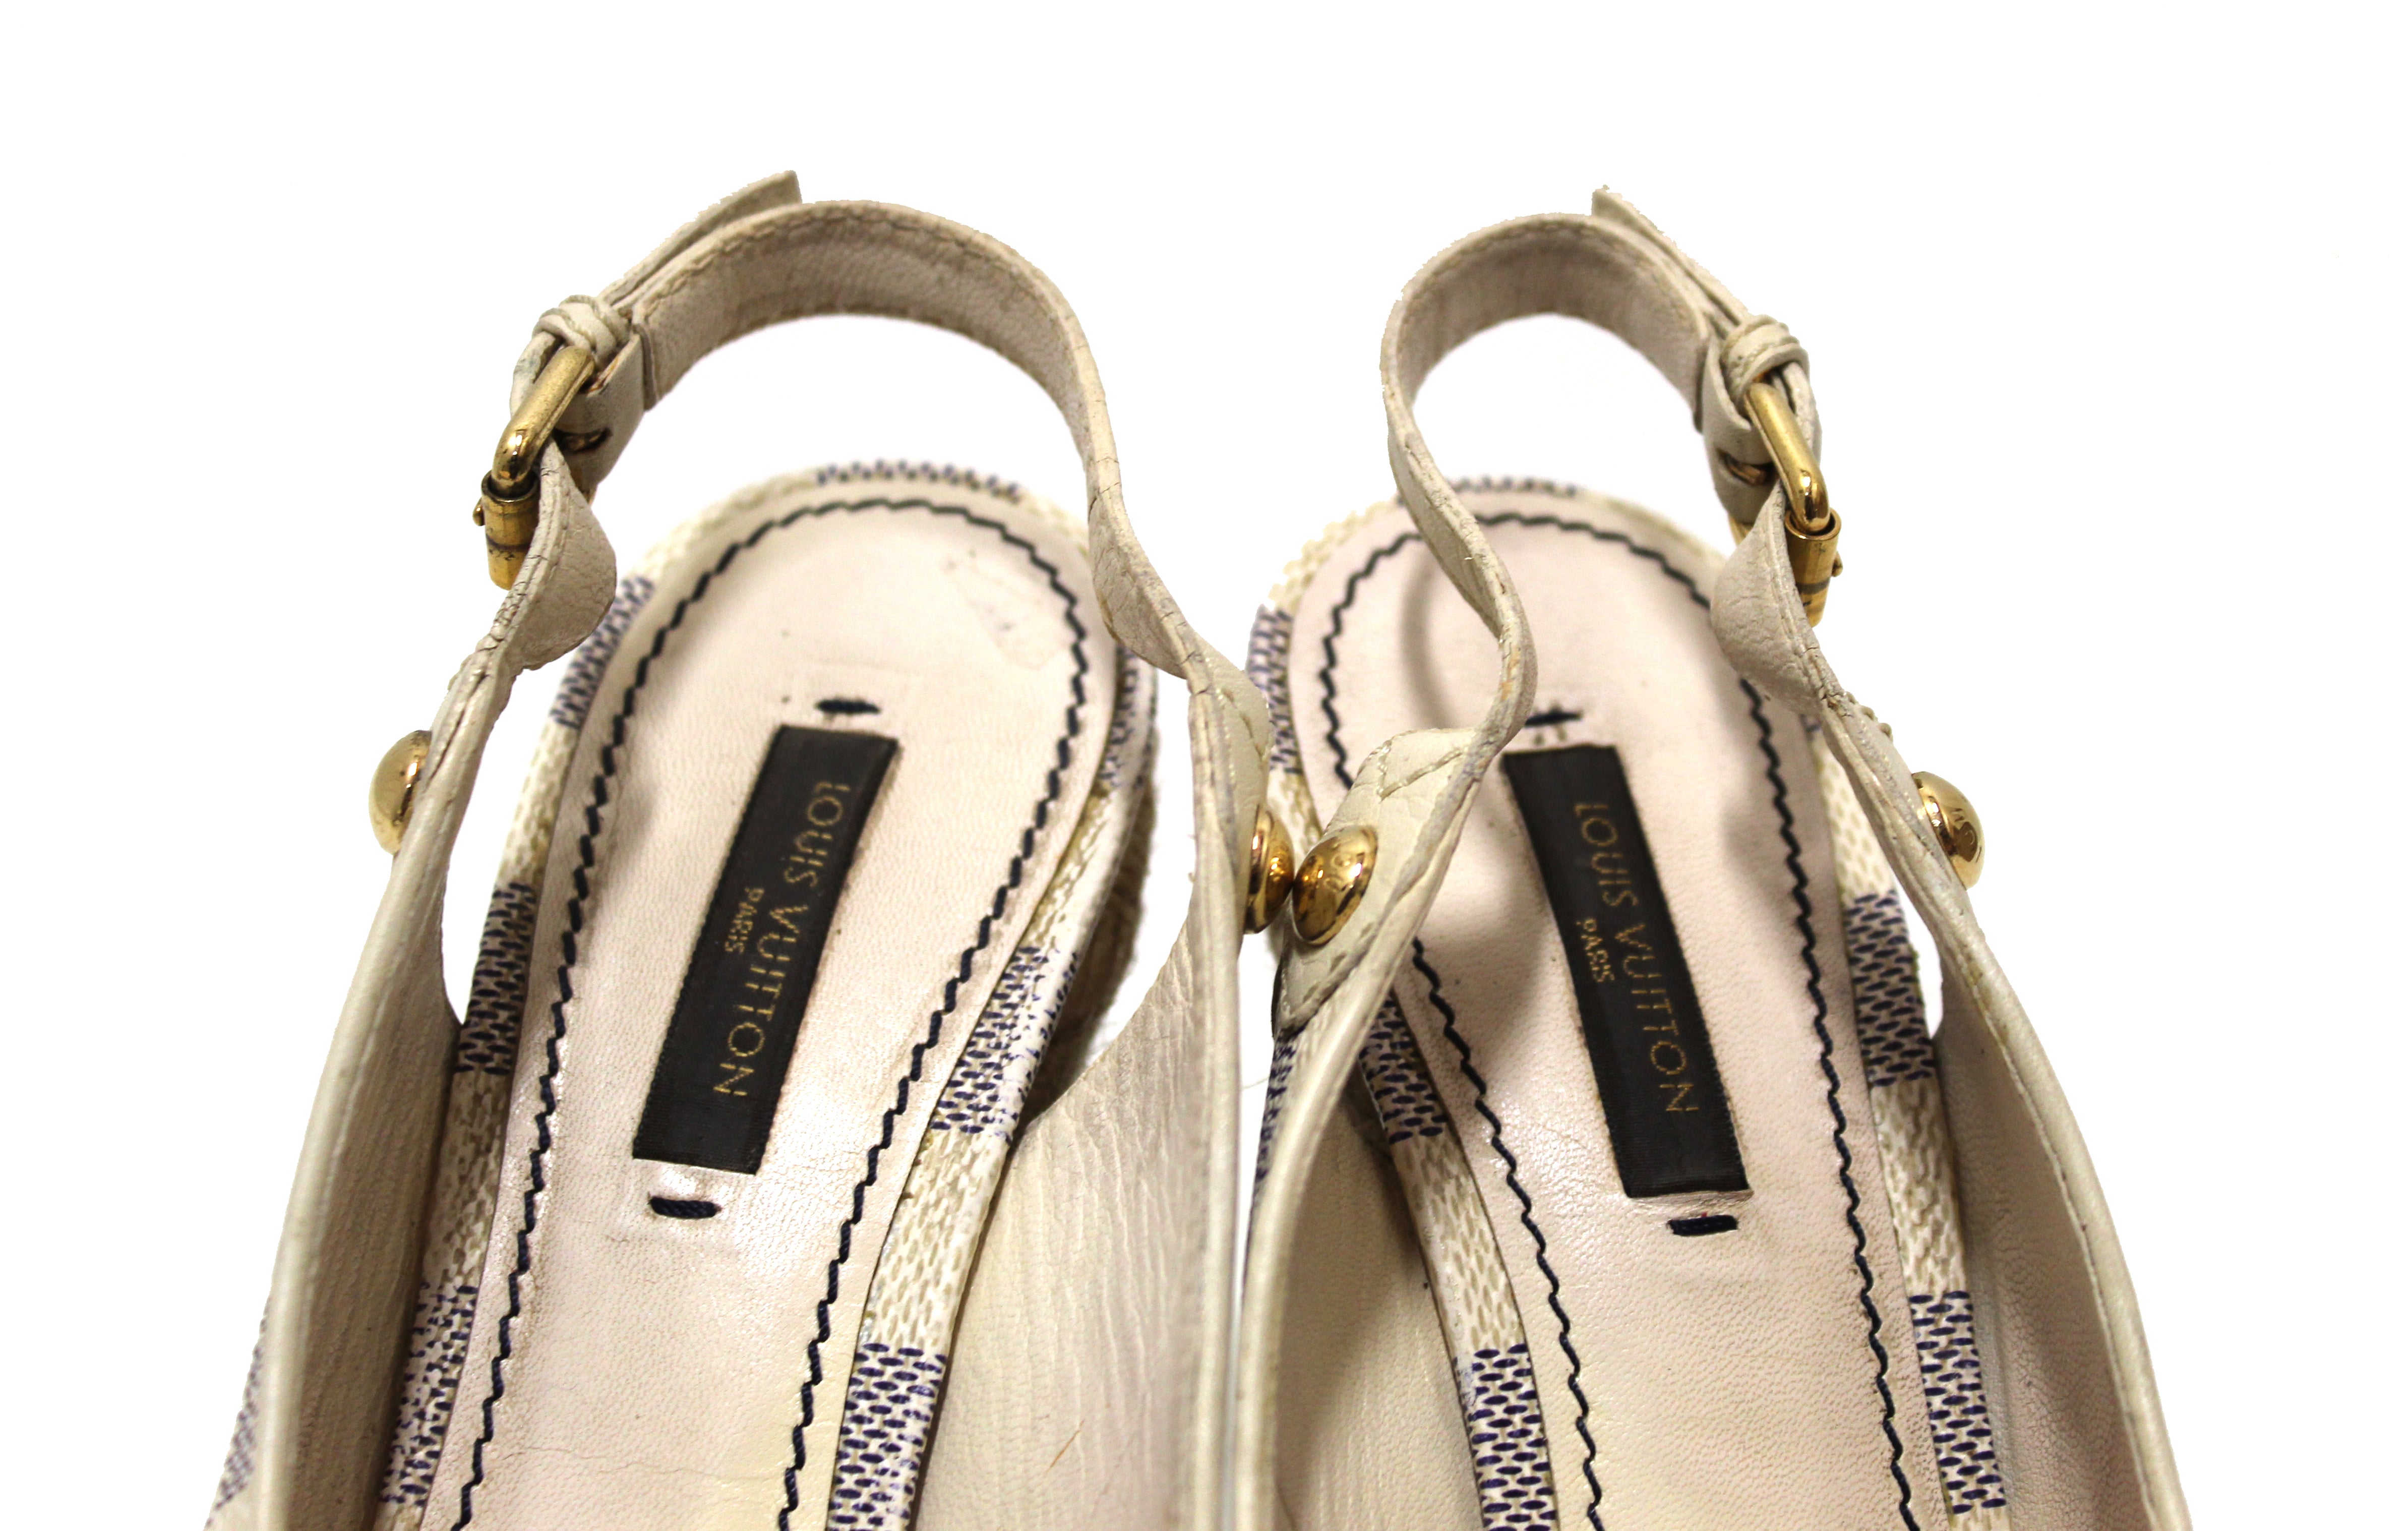 Head Over Heels (Louis Vuitton) – VERRIER HANDCRAFTED (verrier handcrafted)